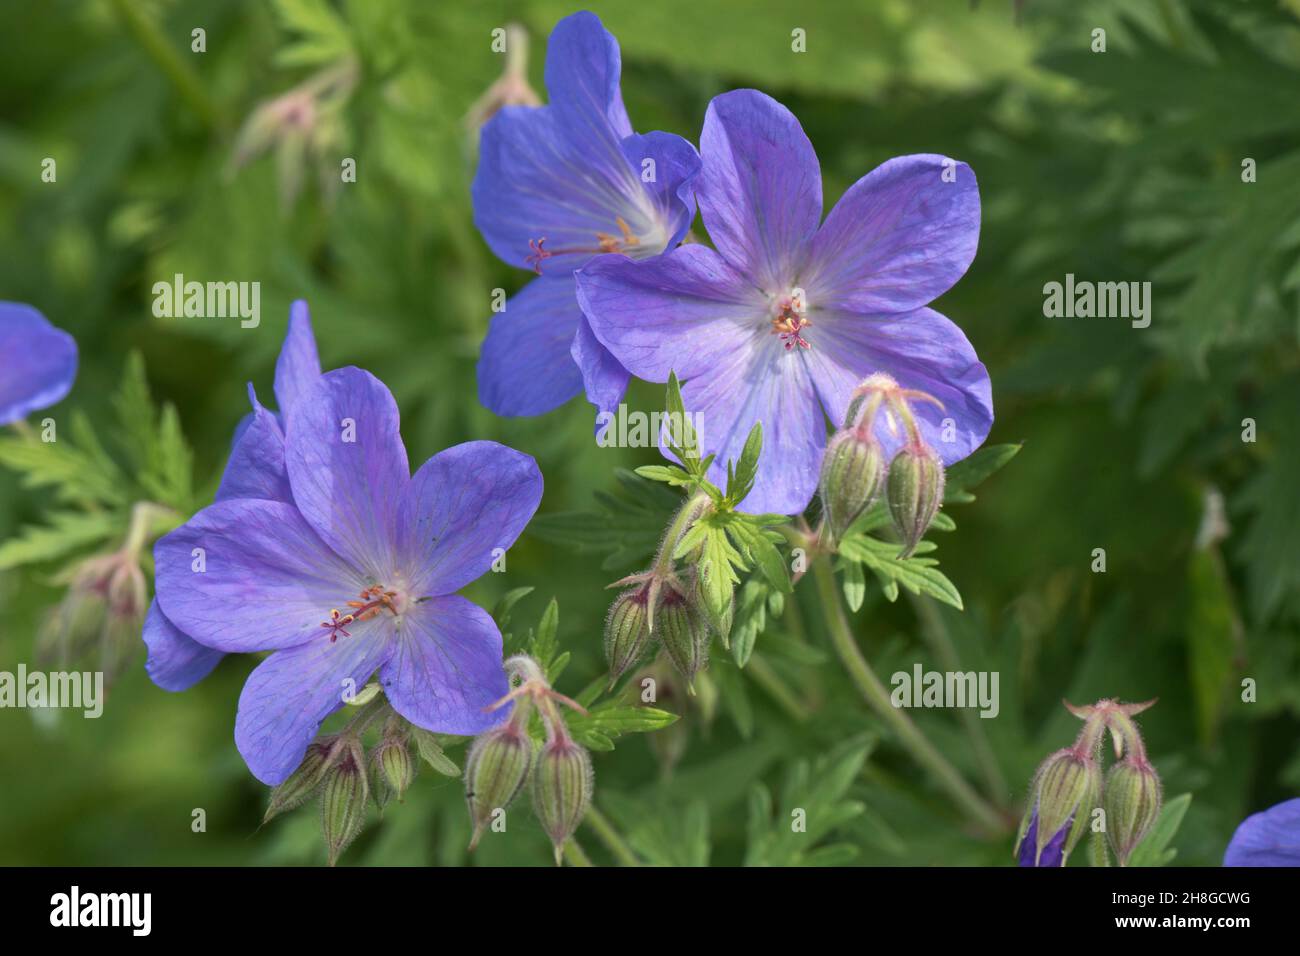 Geranio 'Johnson's Blue' (Geranium x johnsonii) fiori blu e profondamente tagliato, foglie sezionate su una pianta giardino perenne, Berkshire, giugno Foto Stock